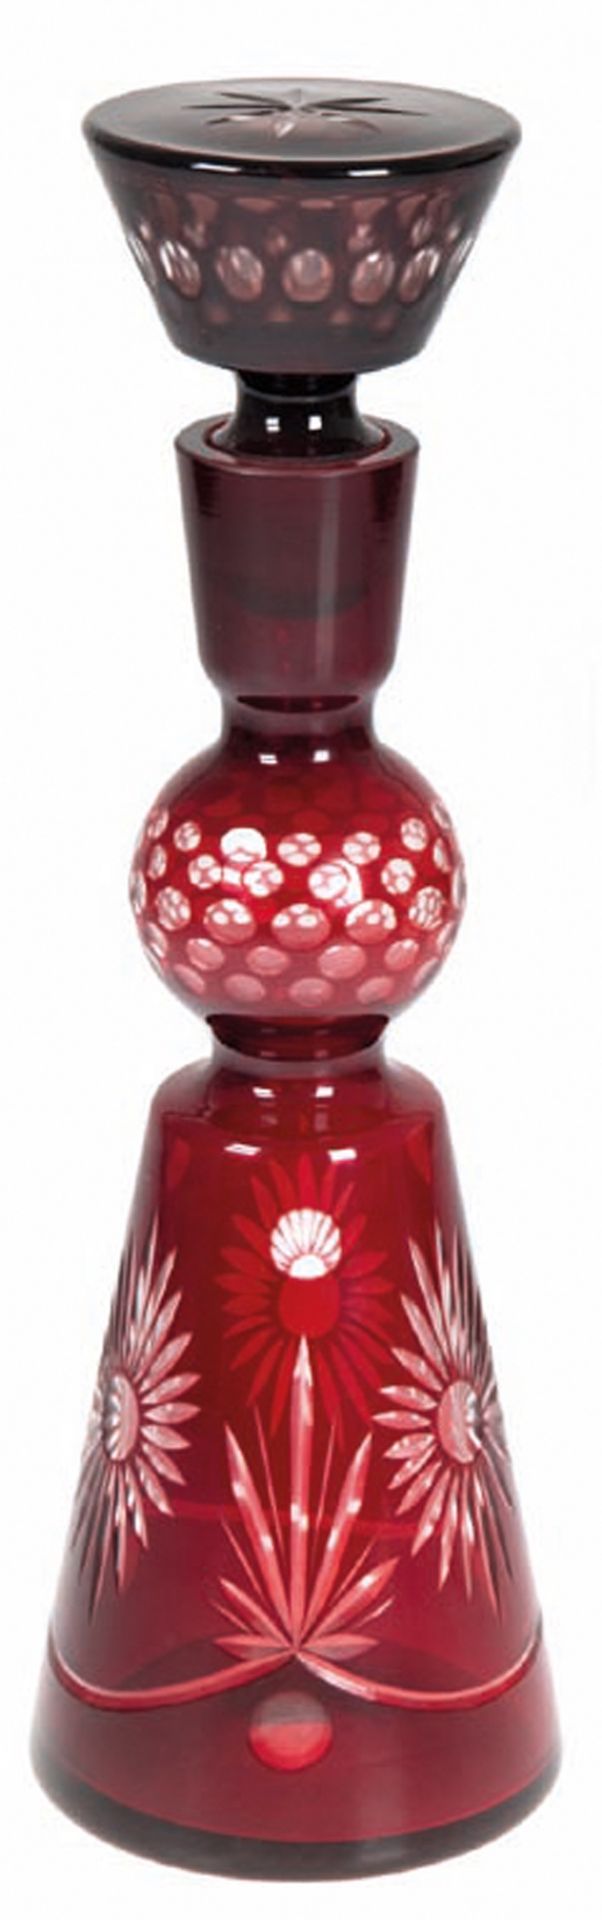 Karaffe, Kristallglas, mit rotem Überfang, floral und ornamental geschliffen, eingeschliffener Hohl